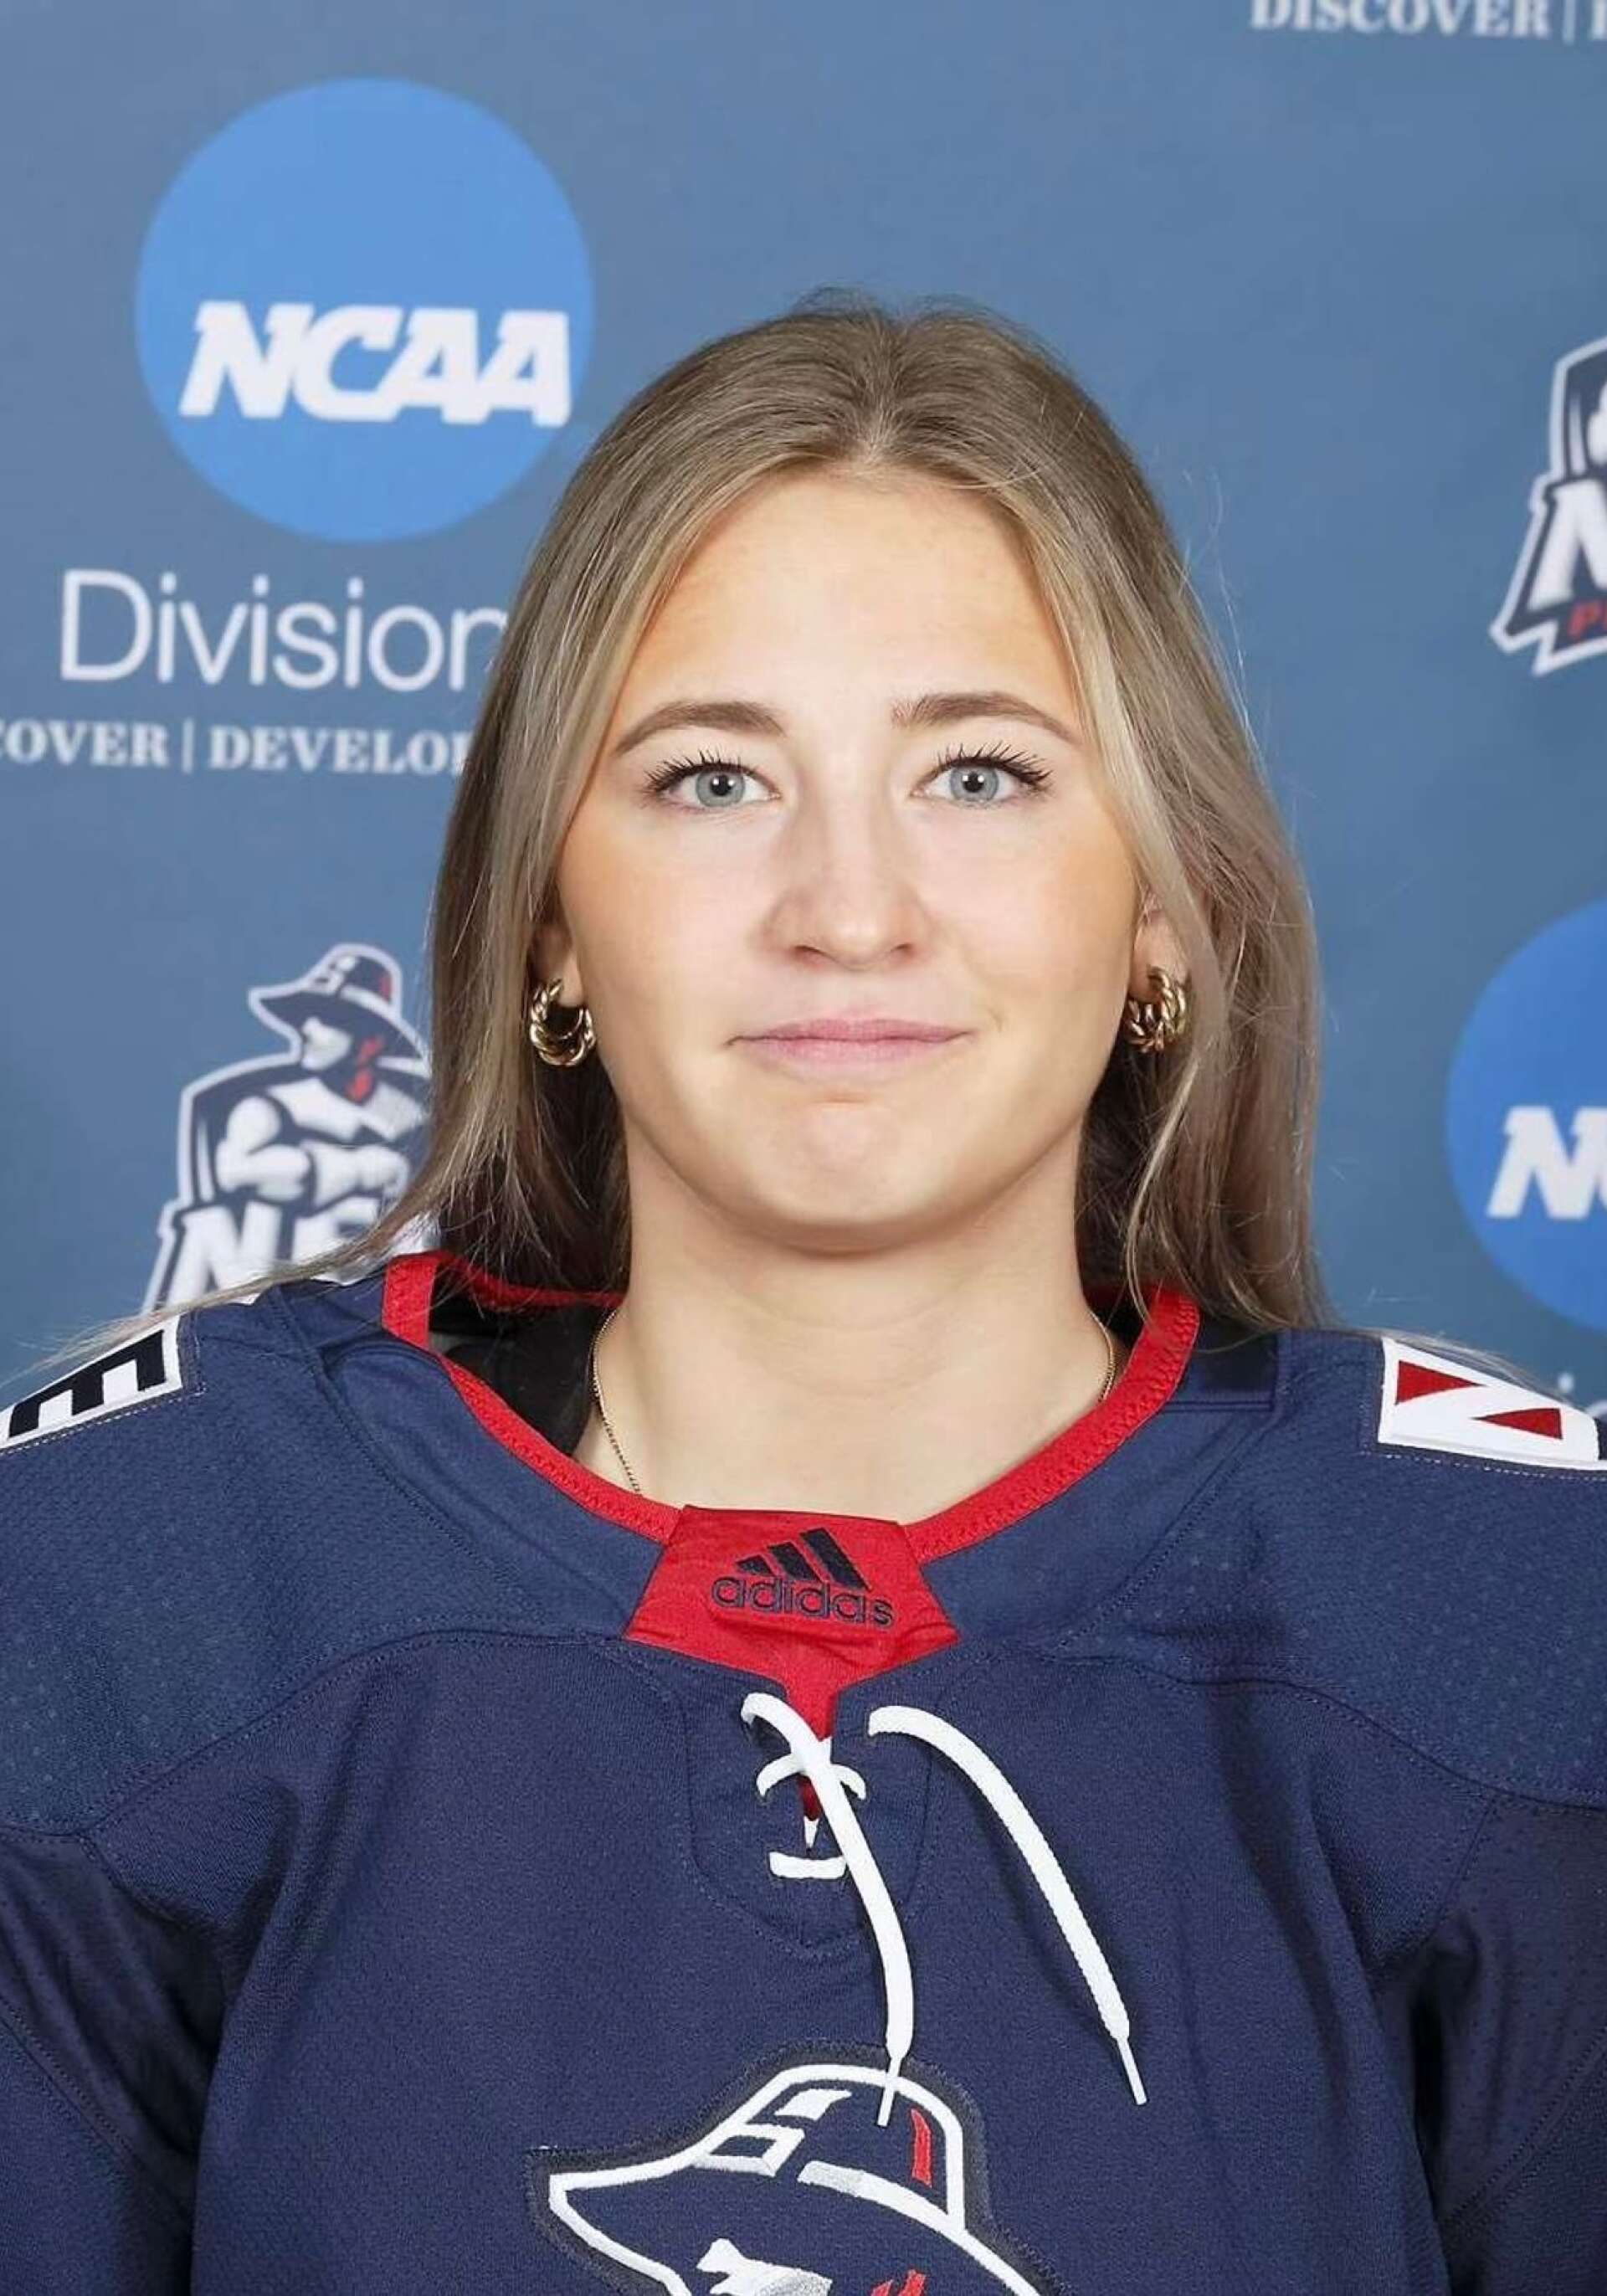 Olivia Lindberg från Filipstad började sin ishockeykarriär i Wasahallen. Via hockeygymnasiet i Örnsköldsvik och spel i Modo har hon nu gått klart första terminen på collage i USA.